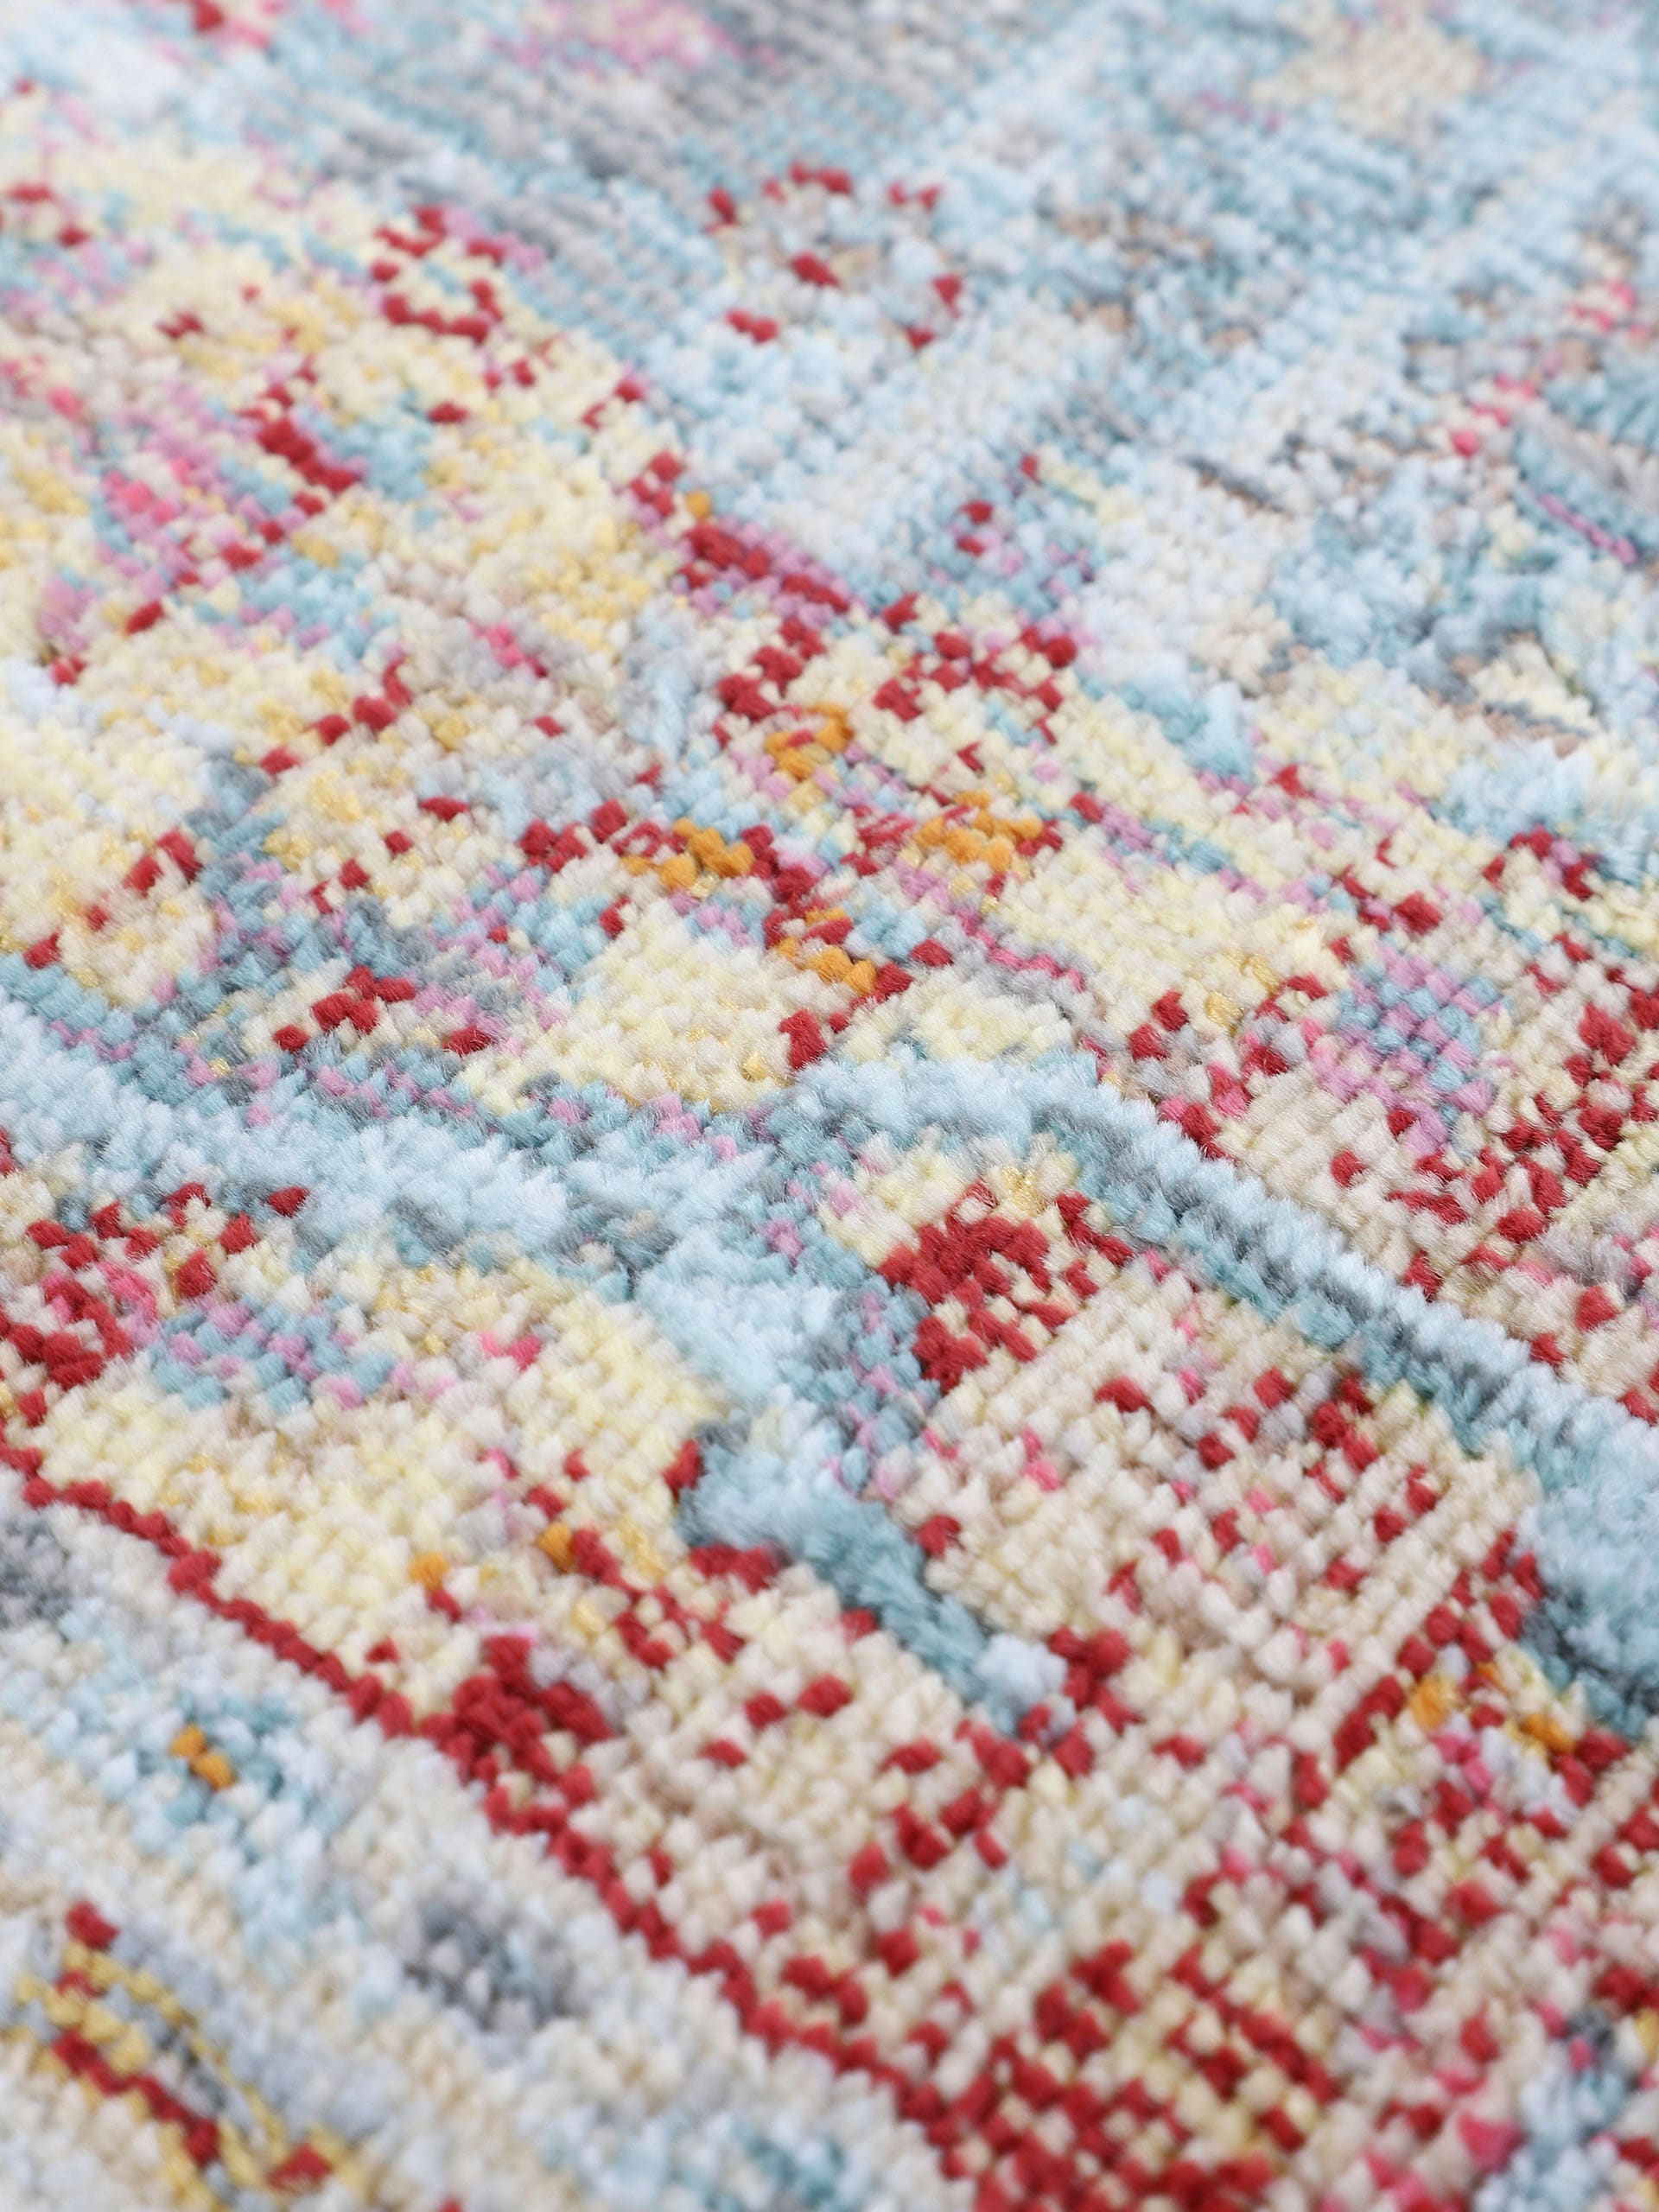 carpetfine Teppich »Esha«, rund, Vintage Orient Look, in schöner Farbgebung, Wohnzimmer